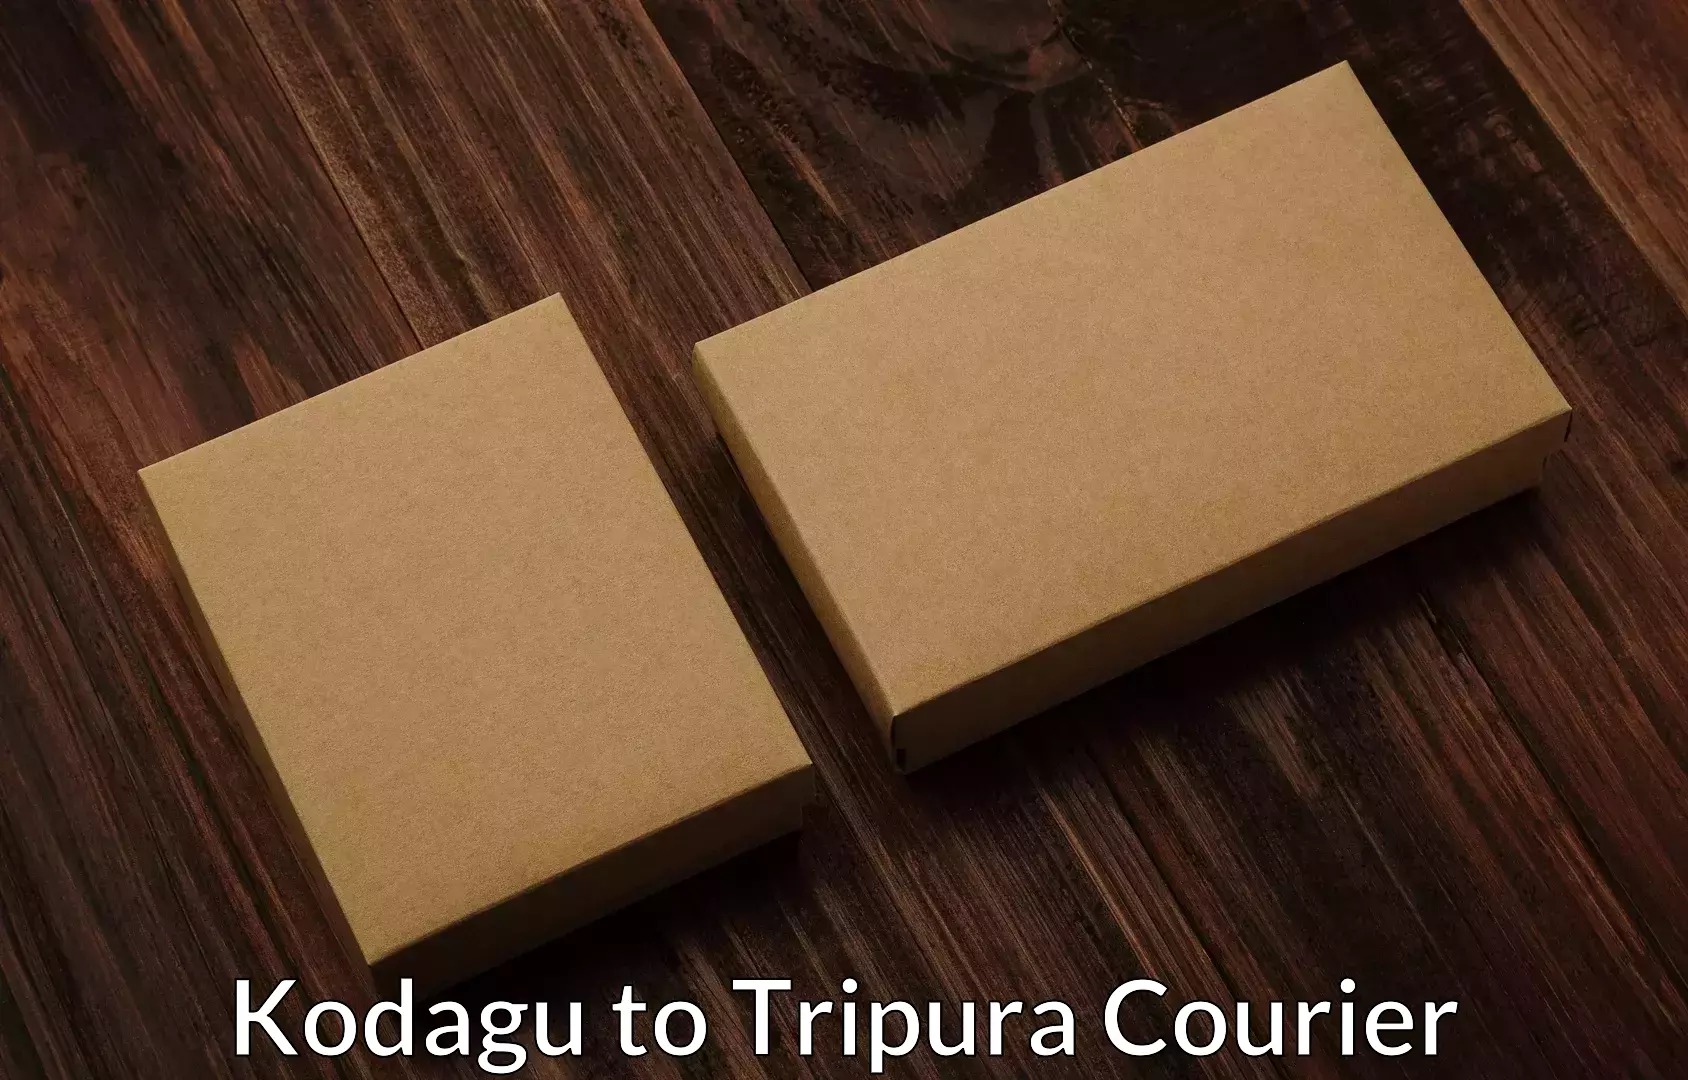 Easy furniture transport Kodagu to Udaipur Tripura